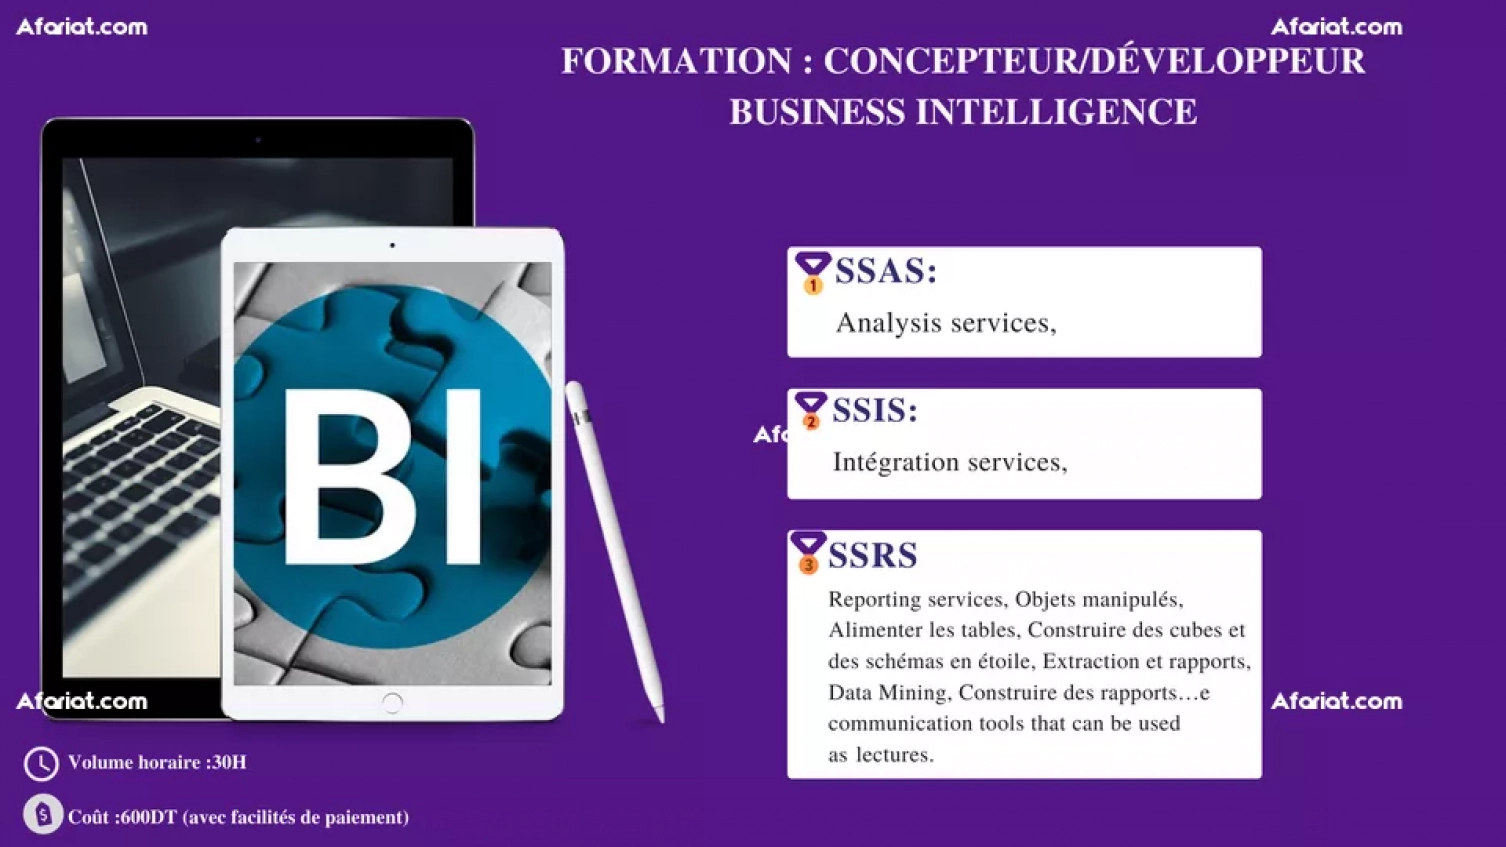 Microsoft Business Intelligence MSBI